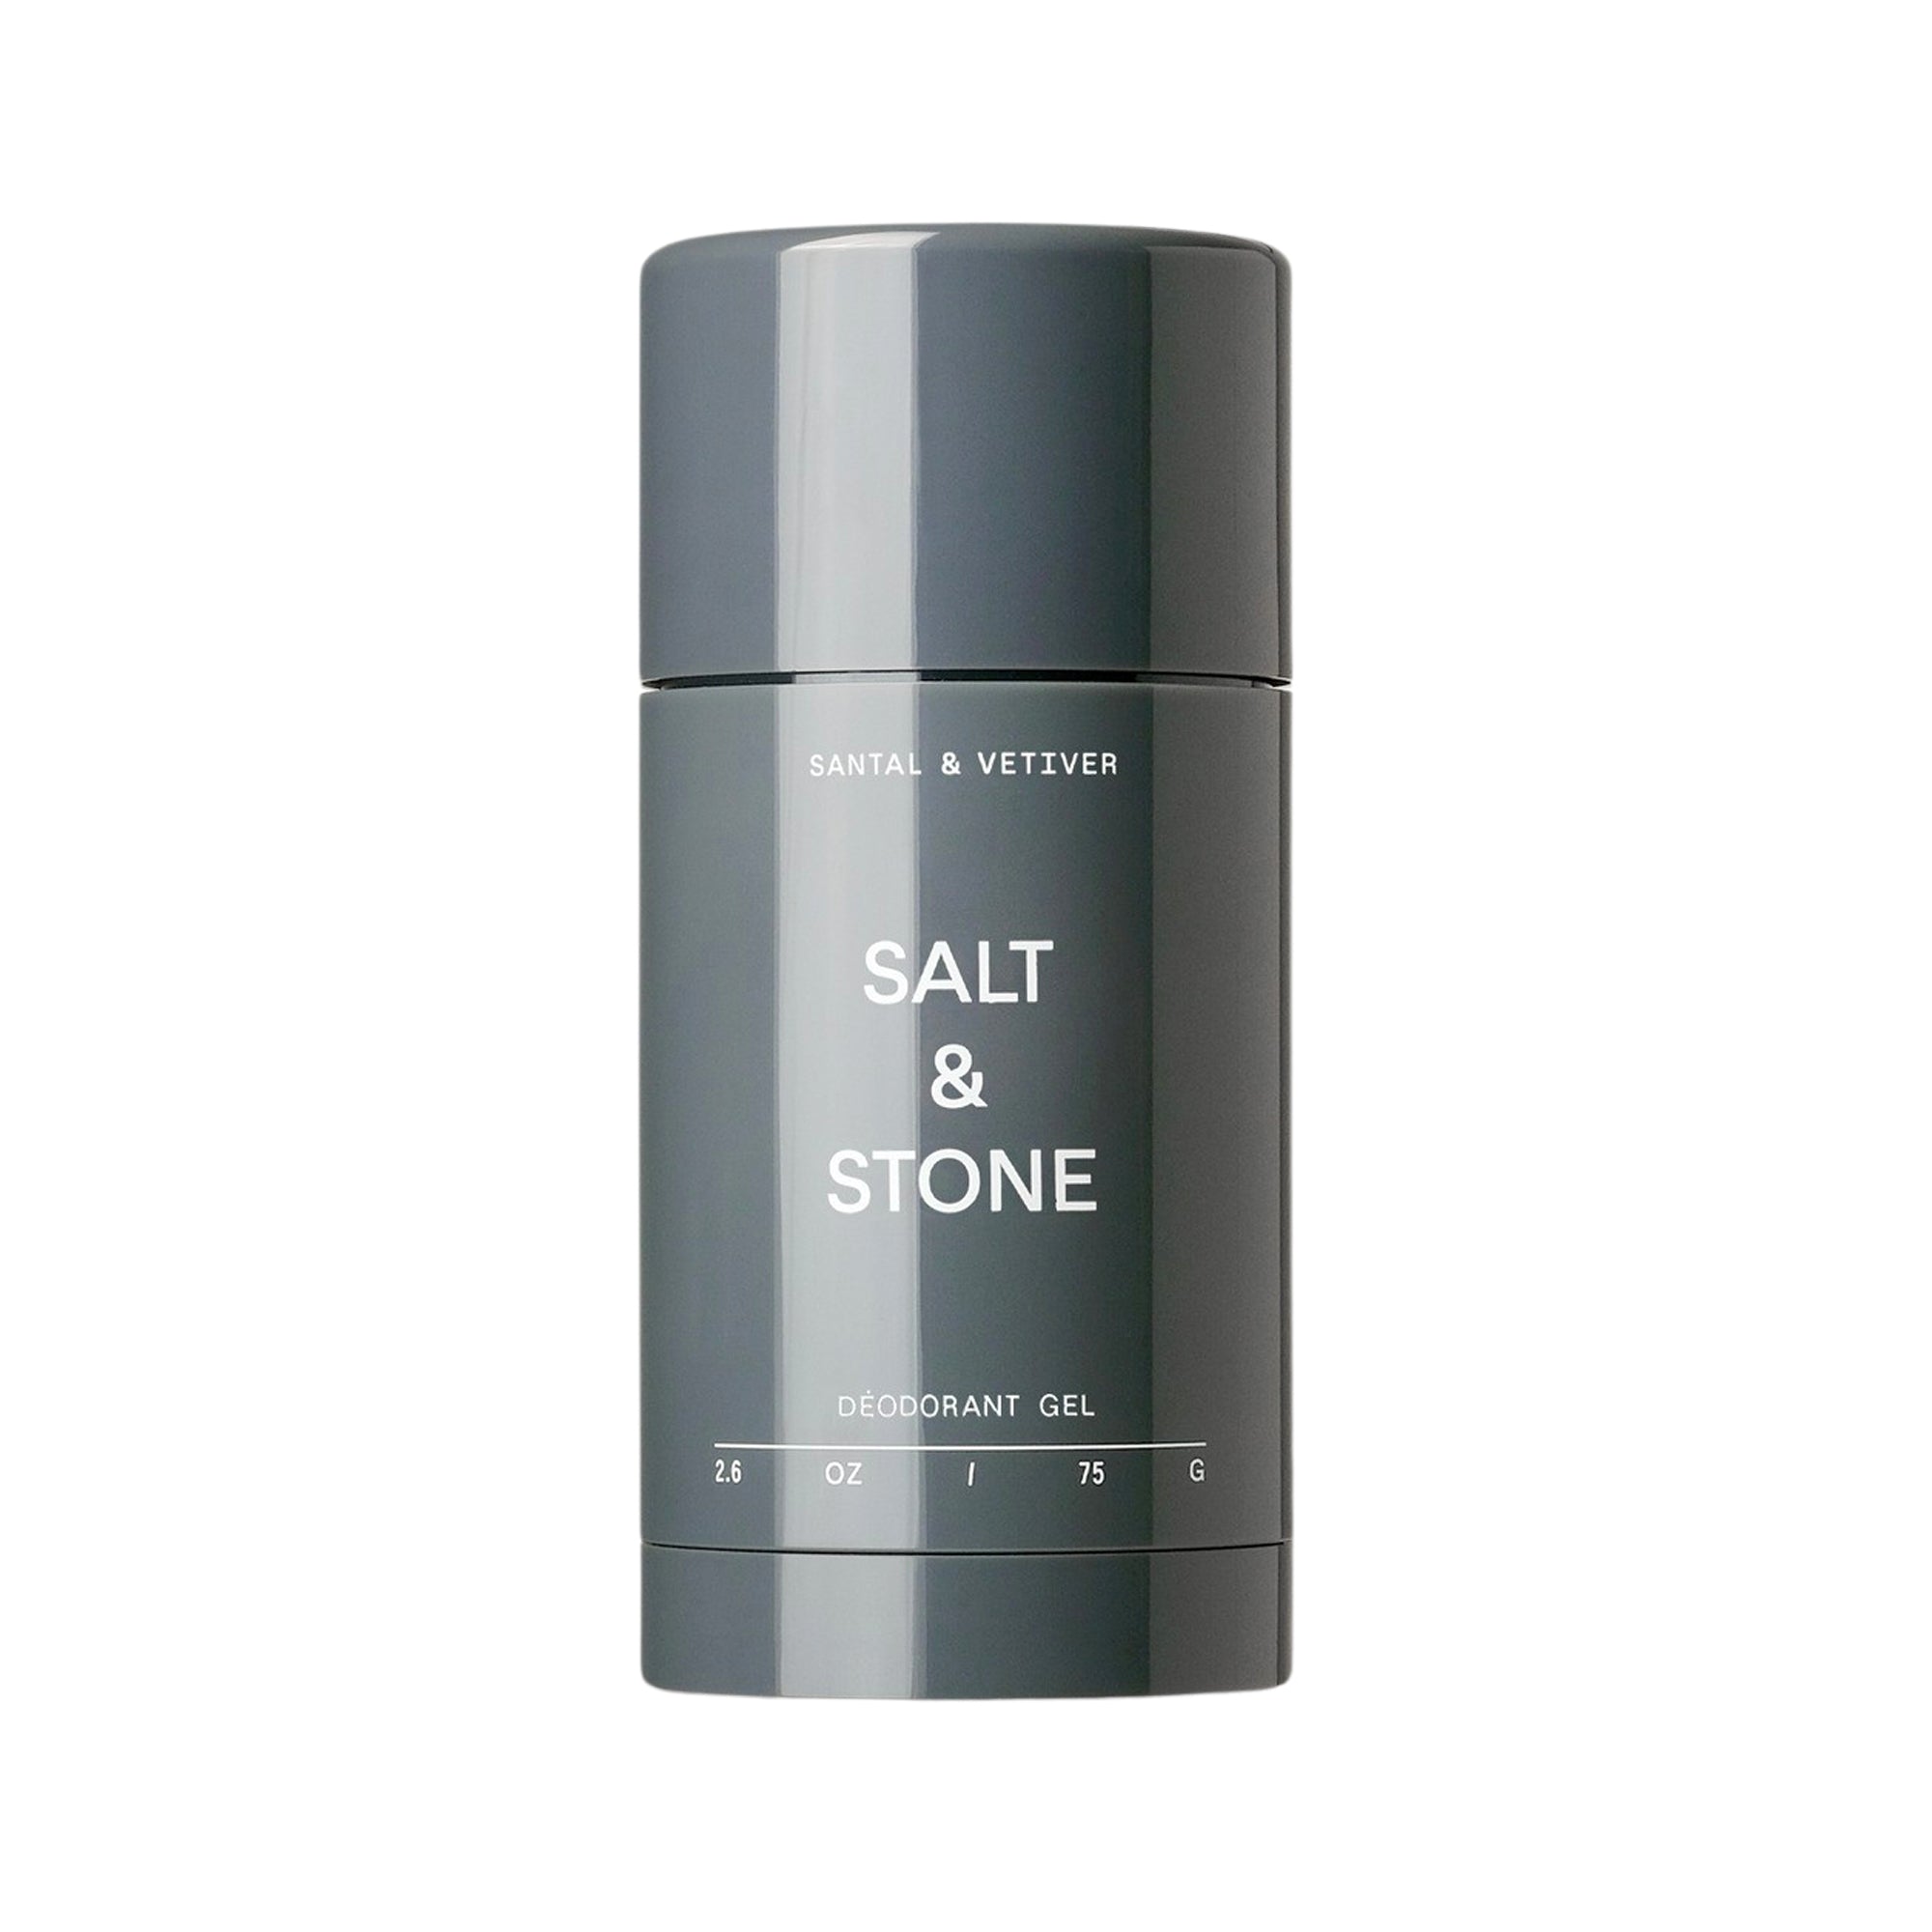 Déodorant gel peau sensible – Santal & Vétiver Gel-Deodorant für empfindliche Haut – Sandelholz und Vetiver - Salt & Stone